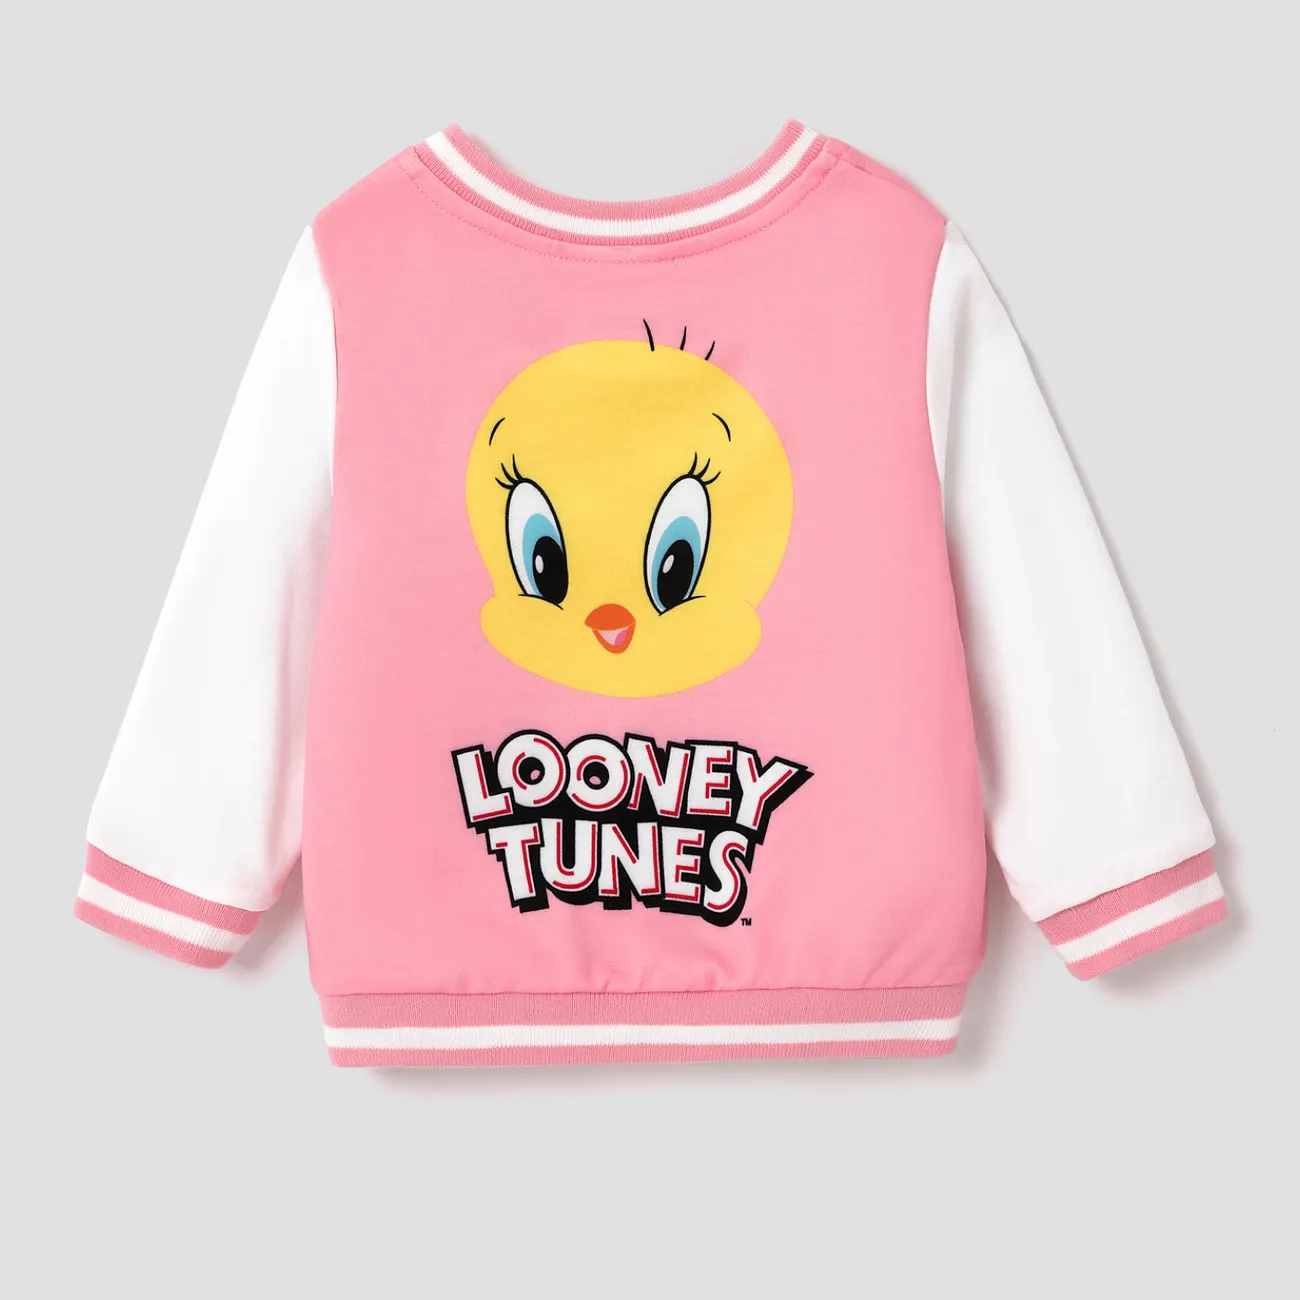 Looney Tunes Baby Boy/Girl Cartoon Animal Print Long-sleeve Jacket  big image 1